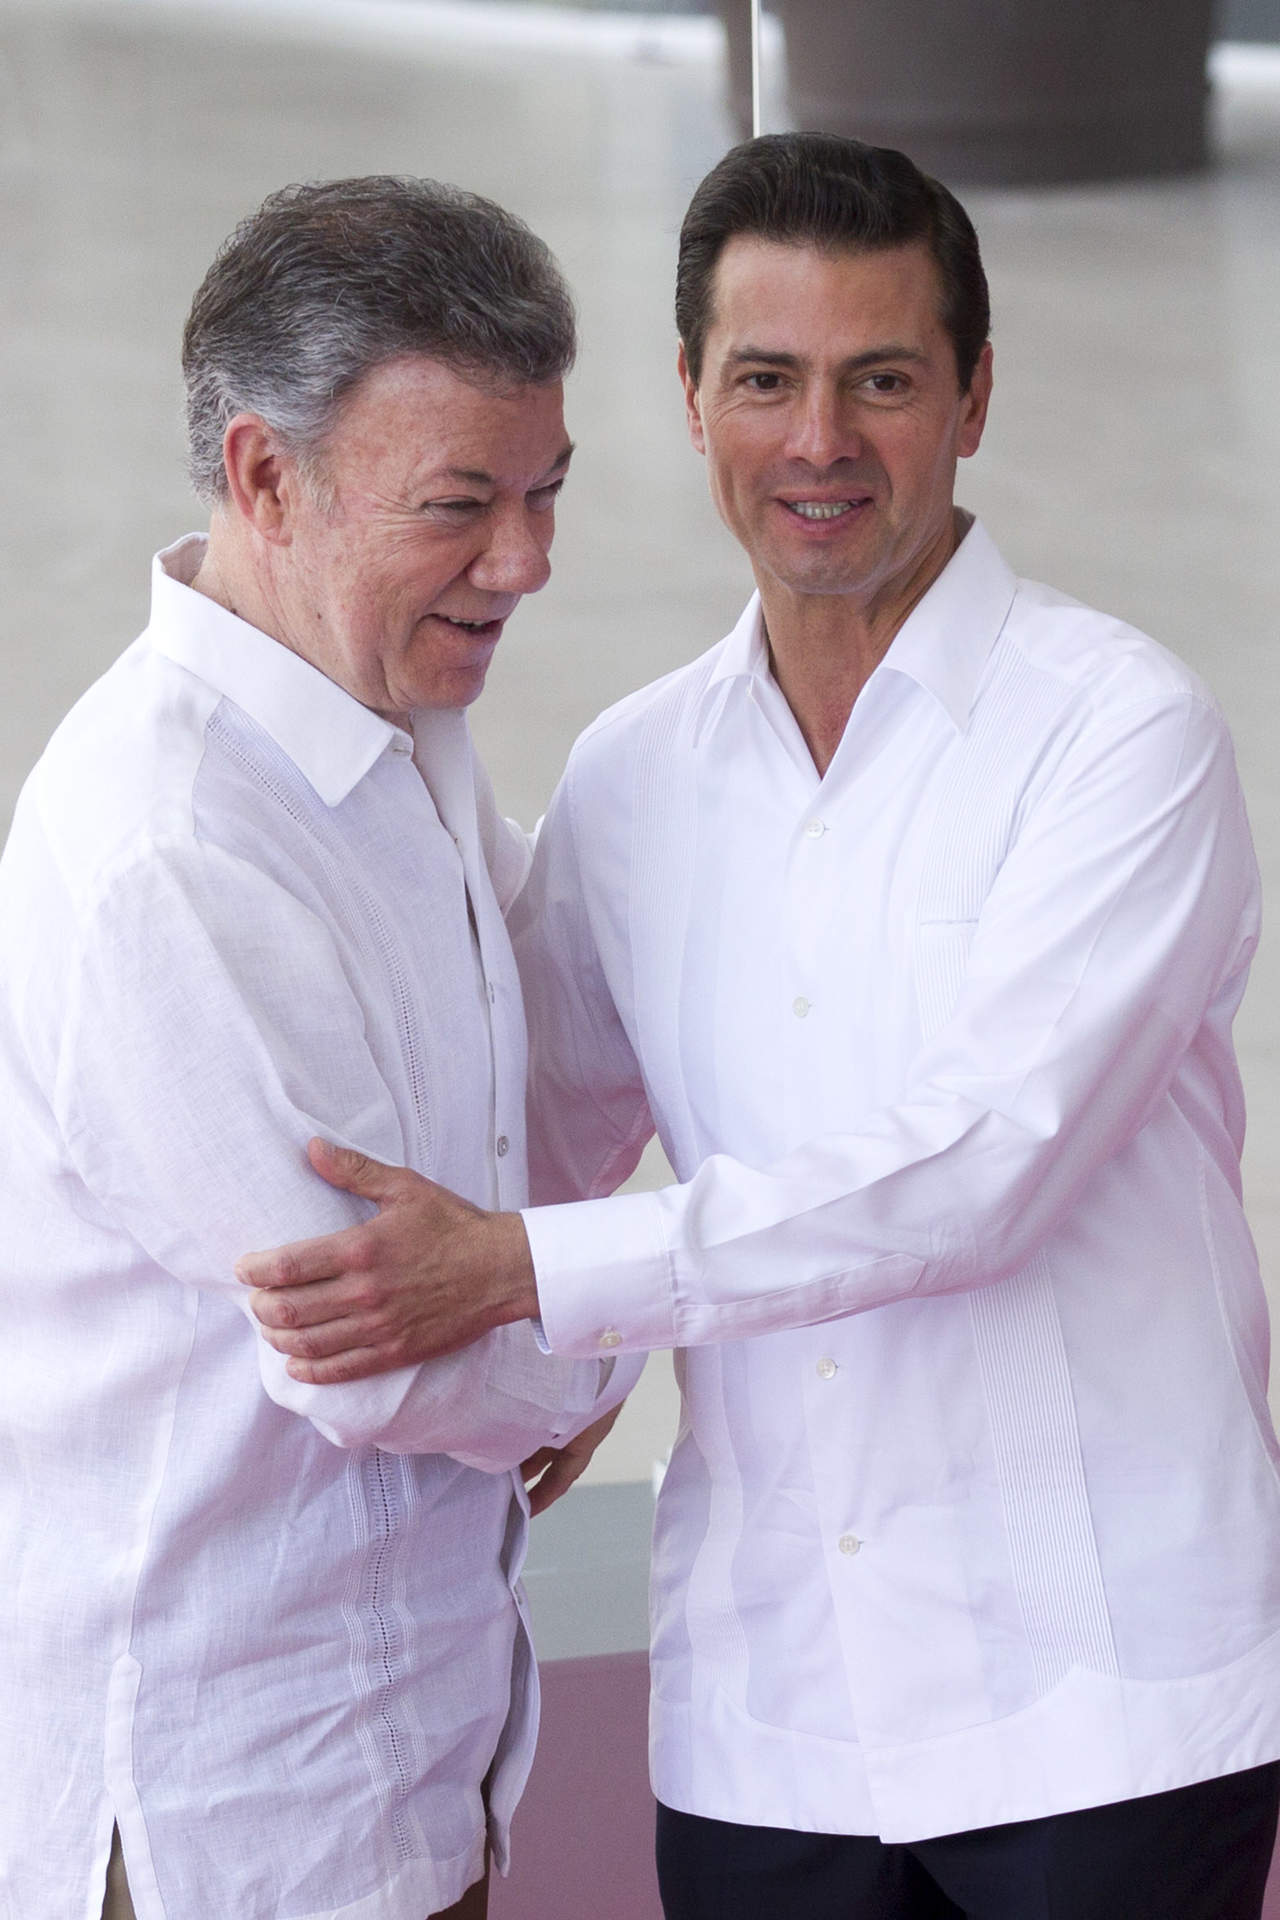 El presidente Enrique Peña Nieto se reunió este martes con su homólogo de Colombia, Juan Manuel Santos, en el marco de la XIII Cumbre de la Alianza del Pacífico, que se lleva a cabo en Puerto Vallarta, Jalisco. (ARCHIVO)